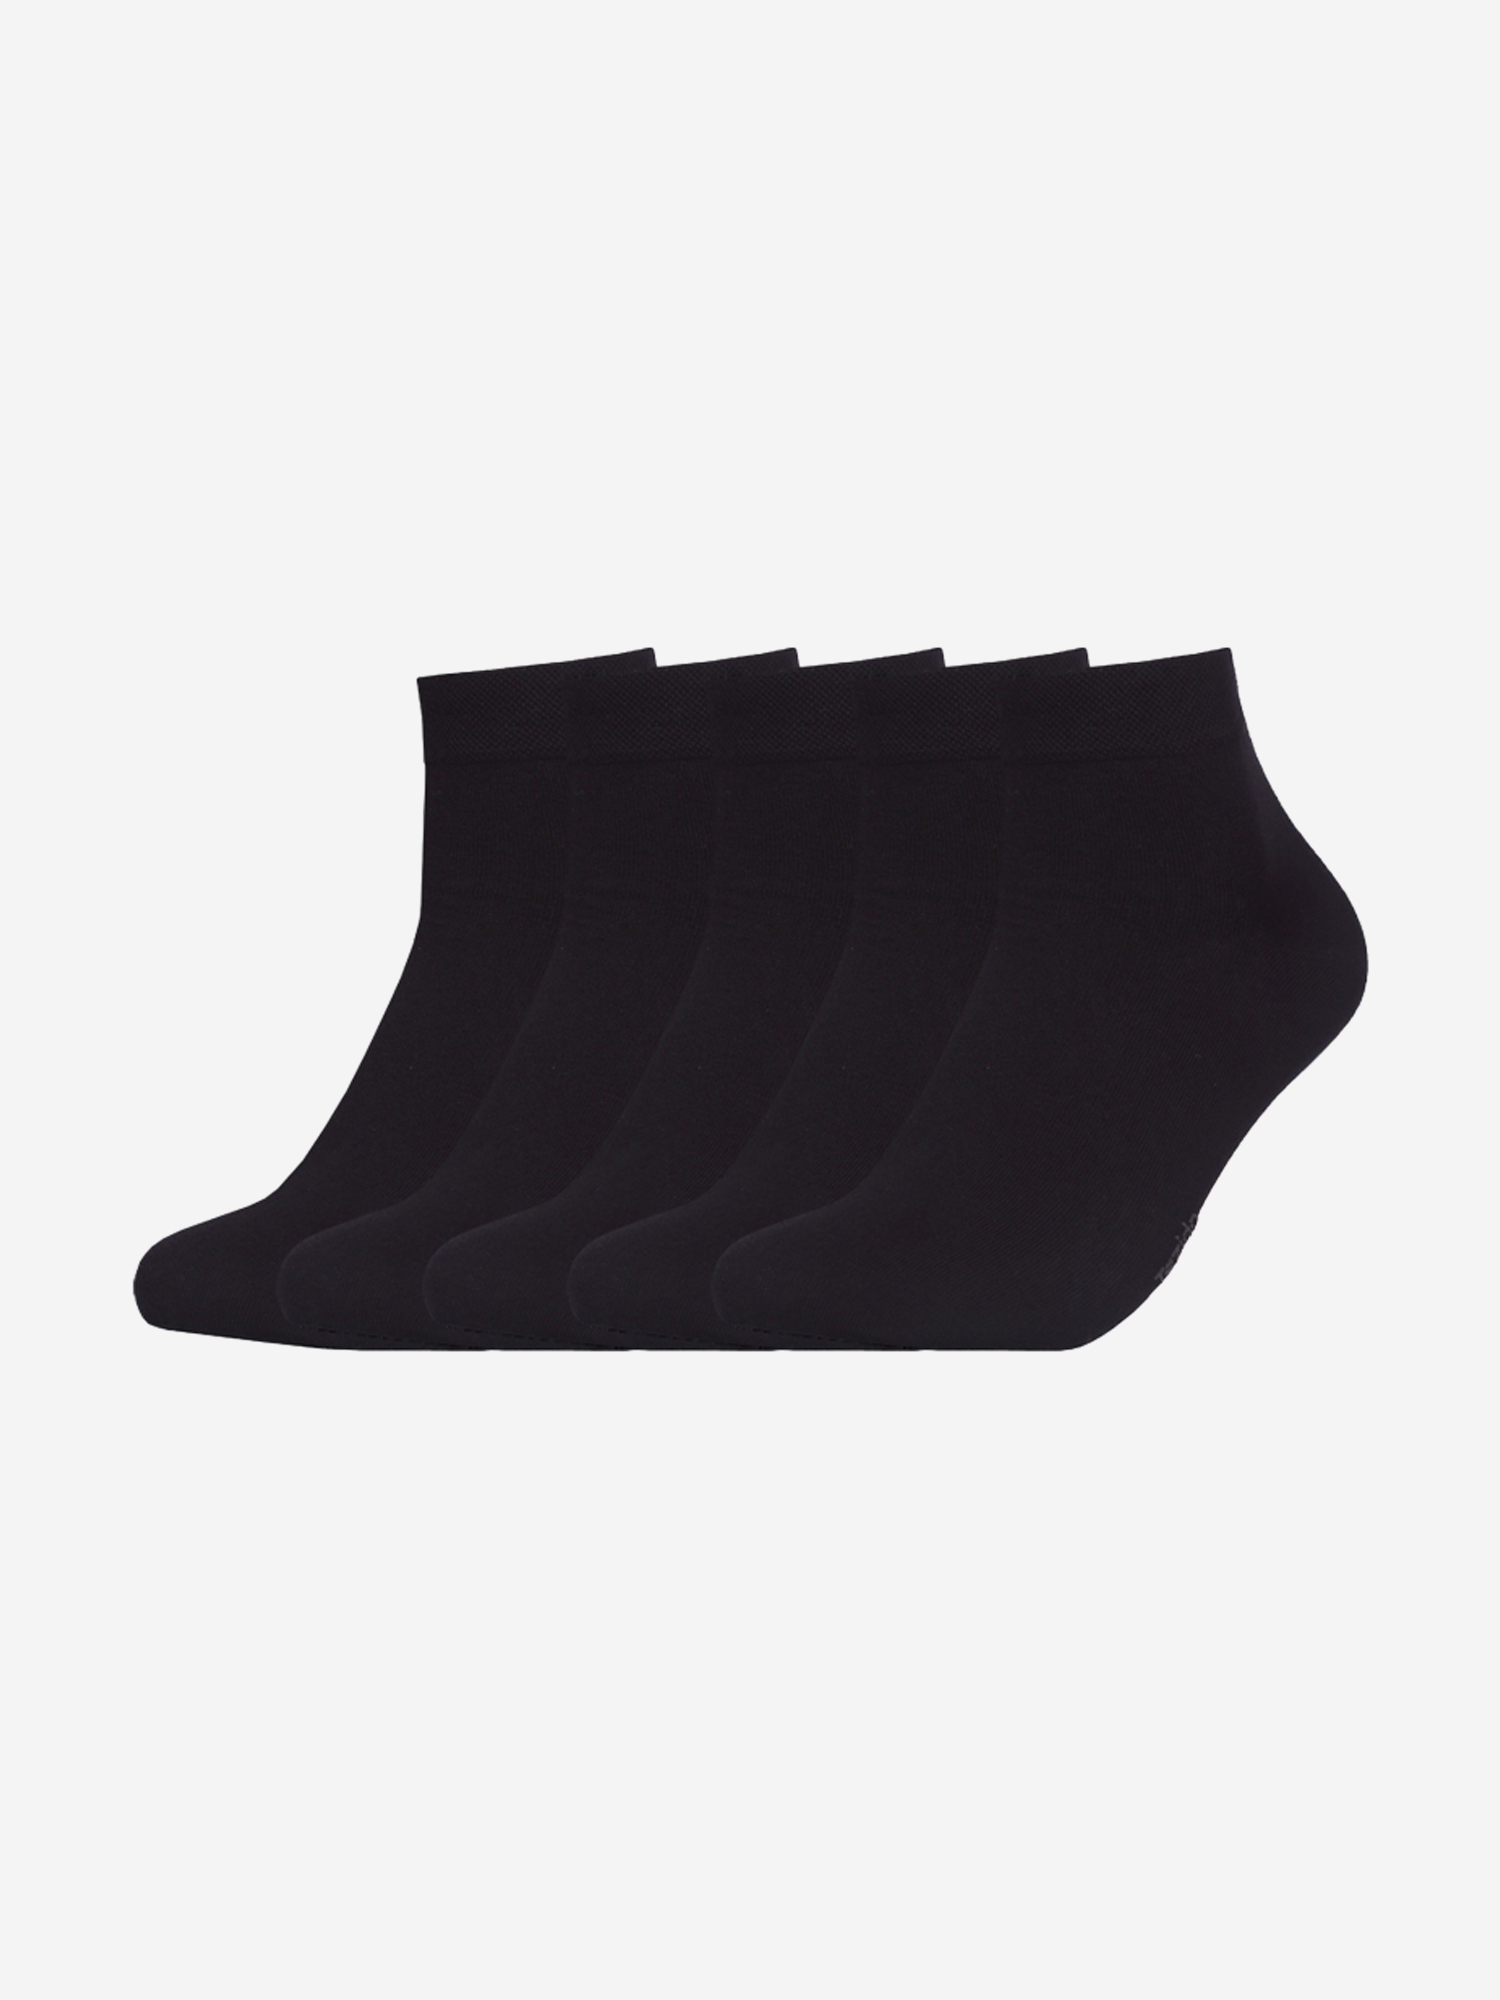 Комплект носков Tezido короткие 5 пар, Черный